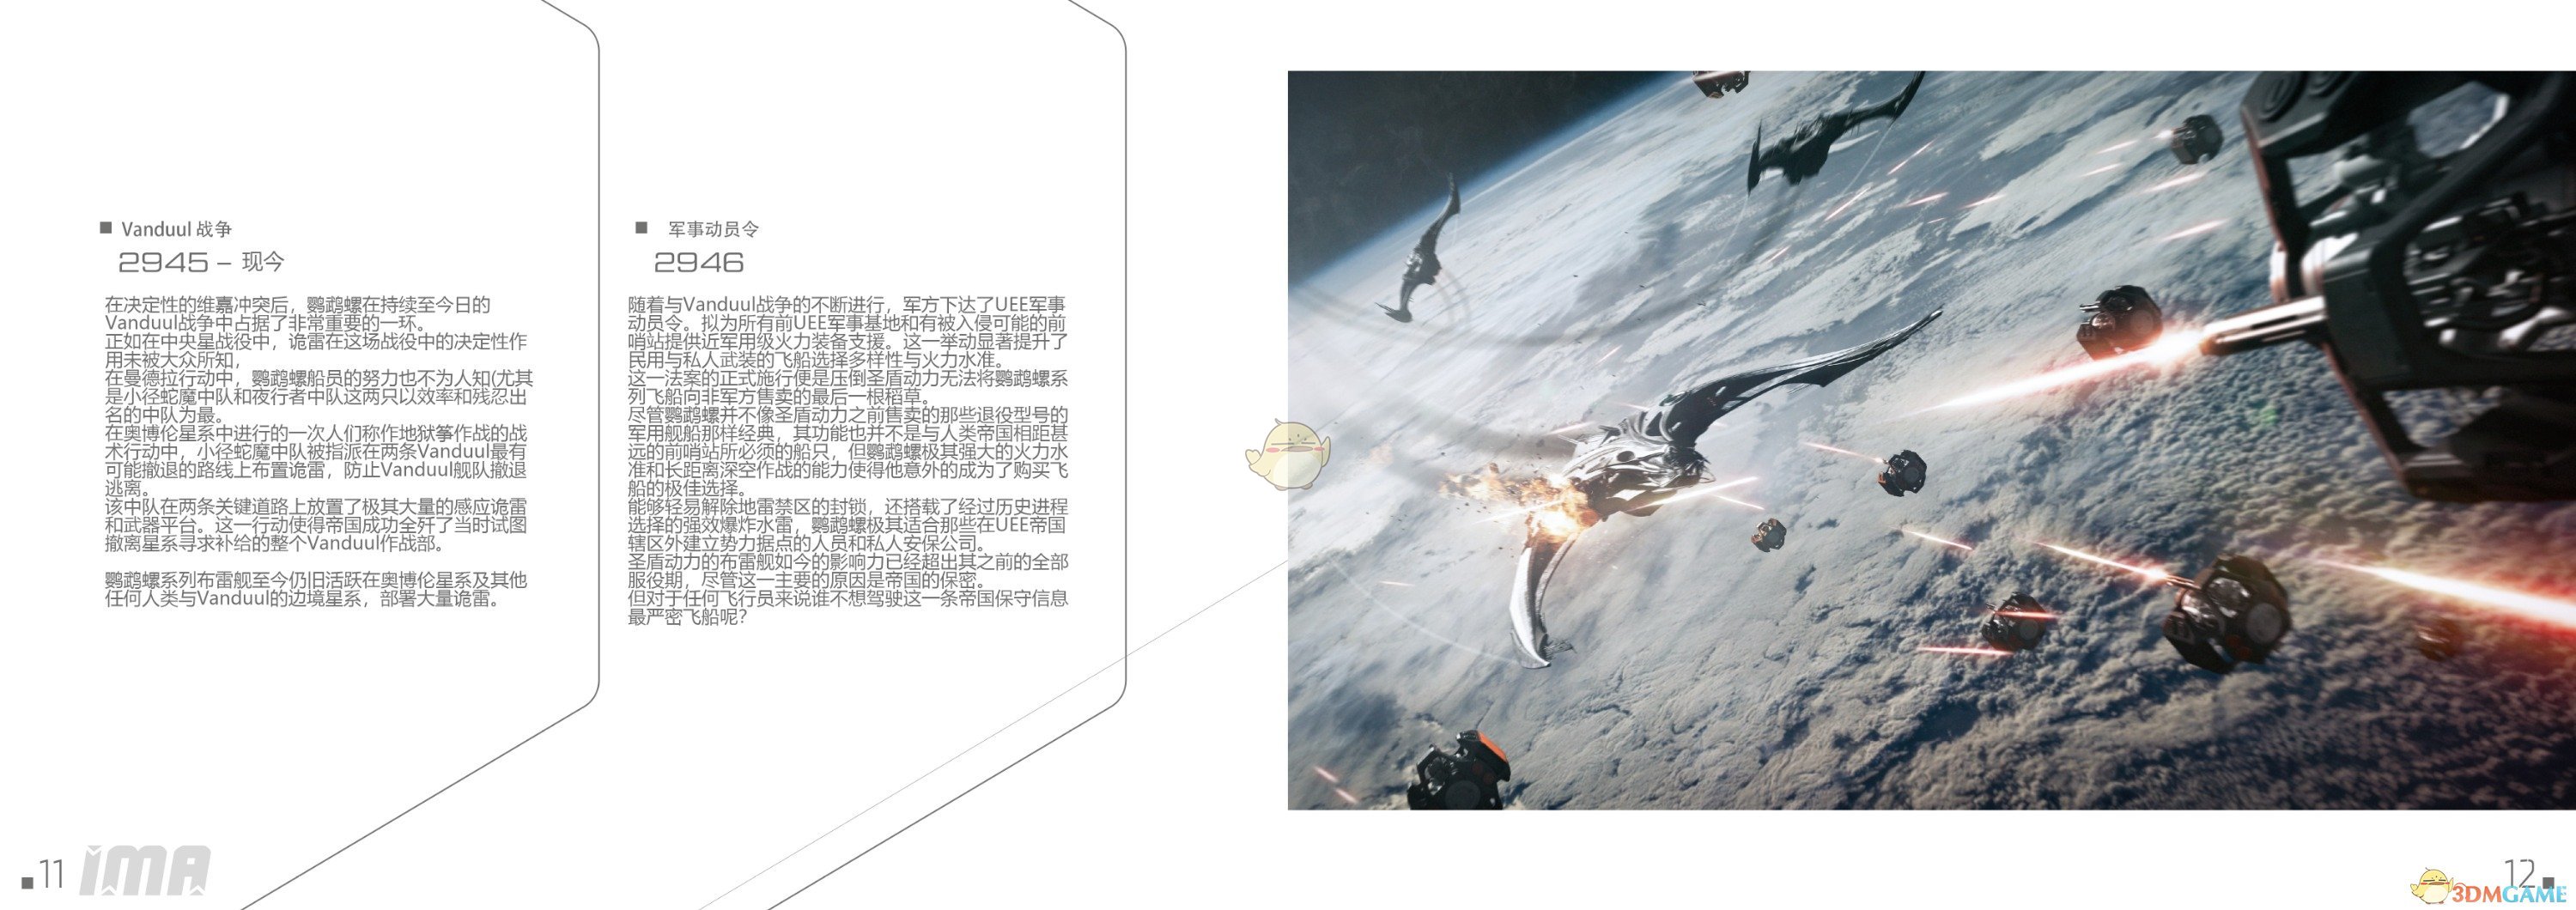 《星际公民》圣盾动力鹦鹉螺中文手册一览